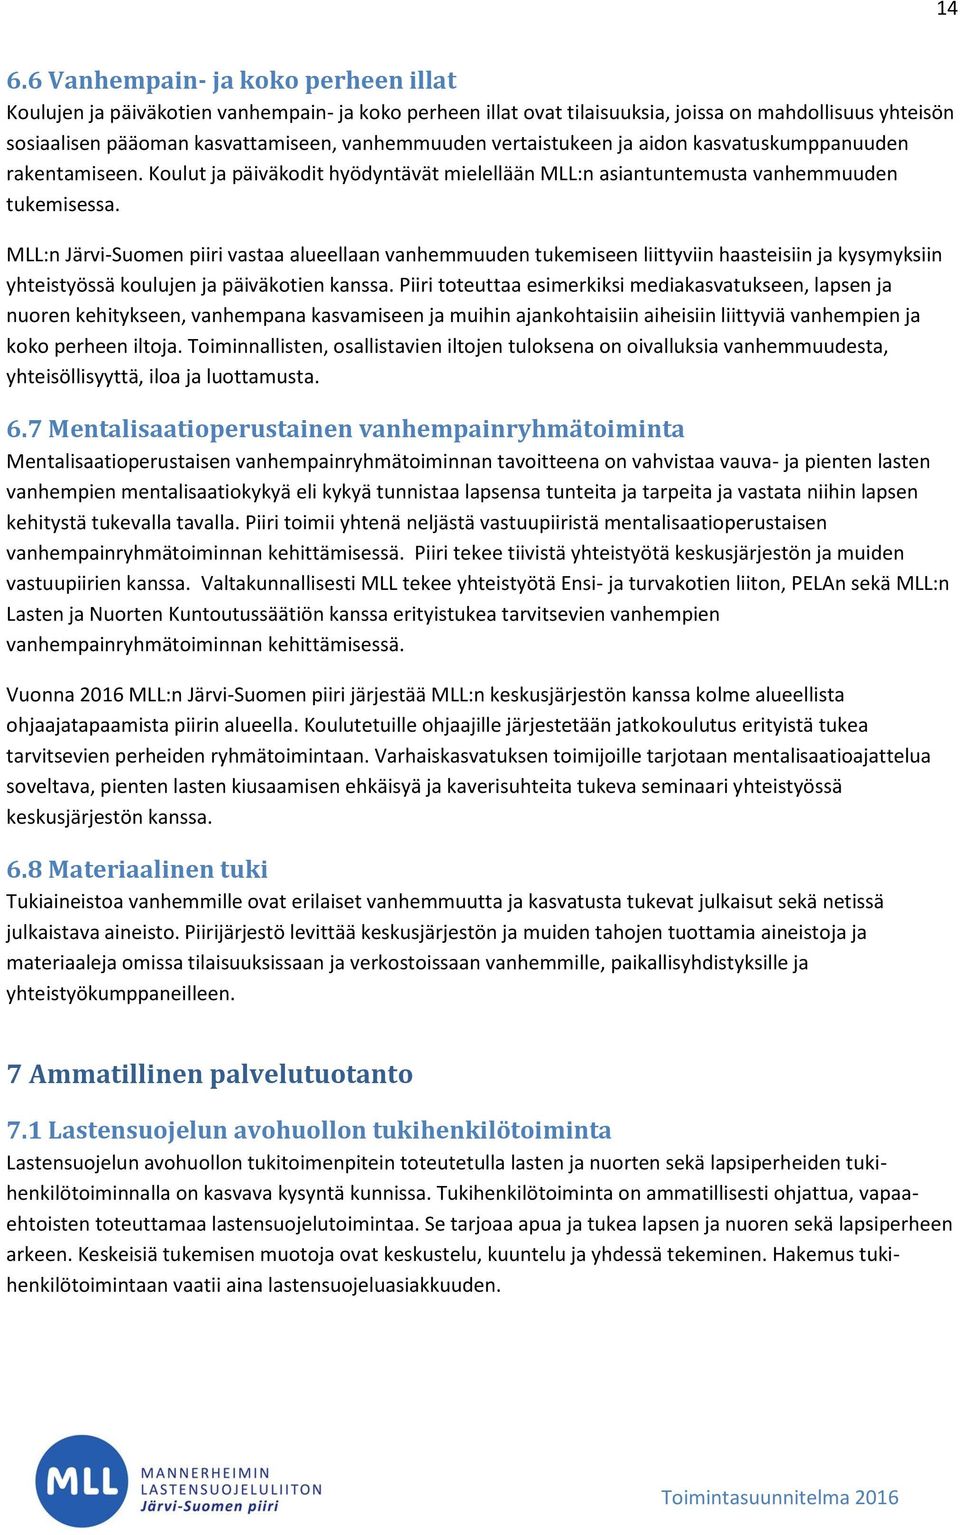 MLL:n Järvi-Suomen piiri vastaa alueellaan vanhemmuuden tukemiseen liittyviin haasteisiin ja kysymyksiin yhteistyössä koulujen ja päiväkotien kanssa.